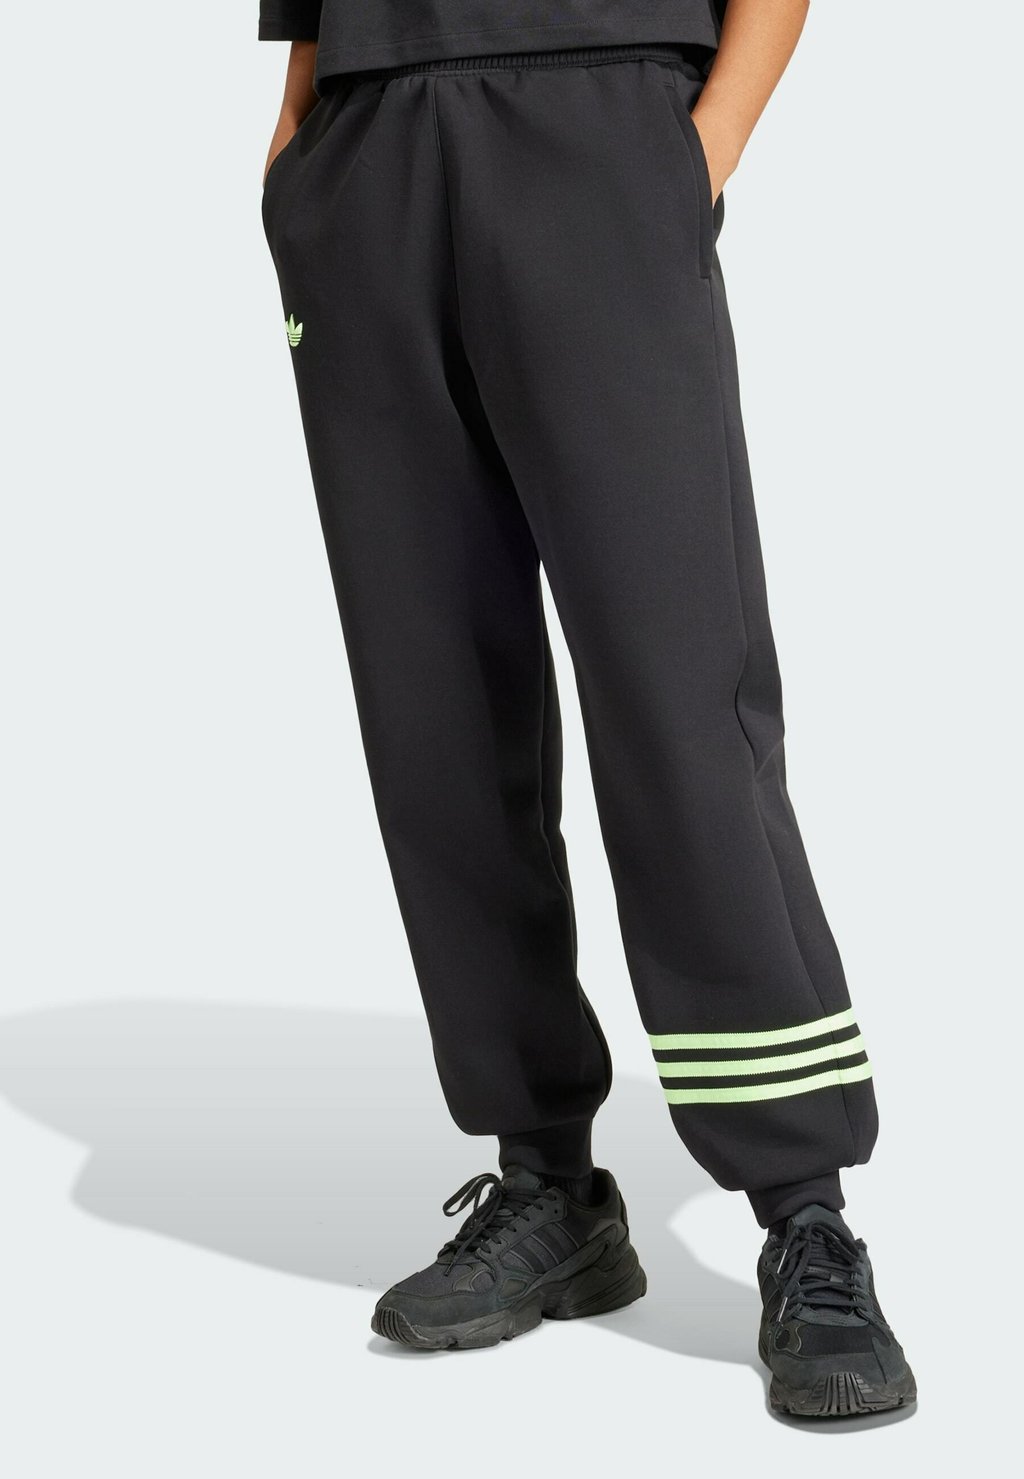 Спортивные штаны adidas Originals, цвет black green spark